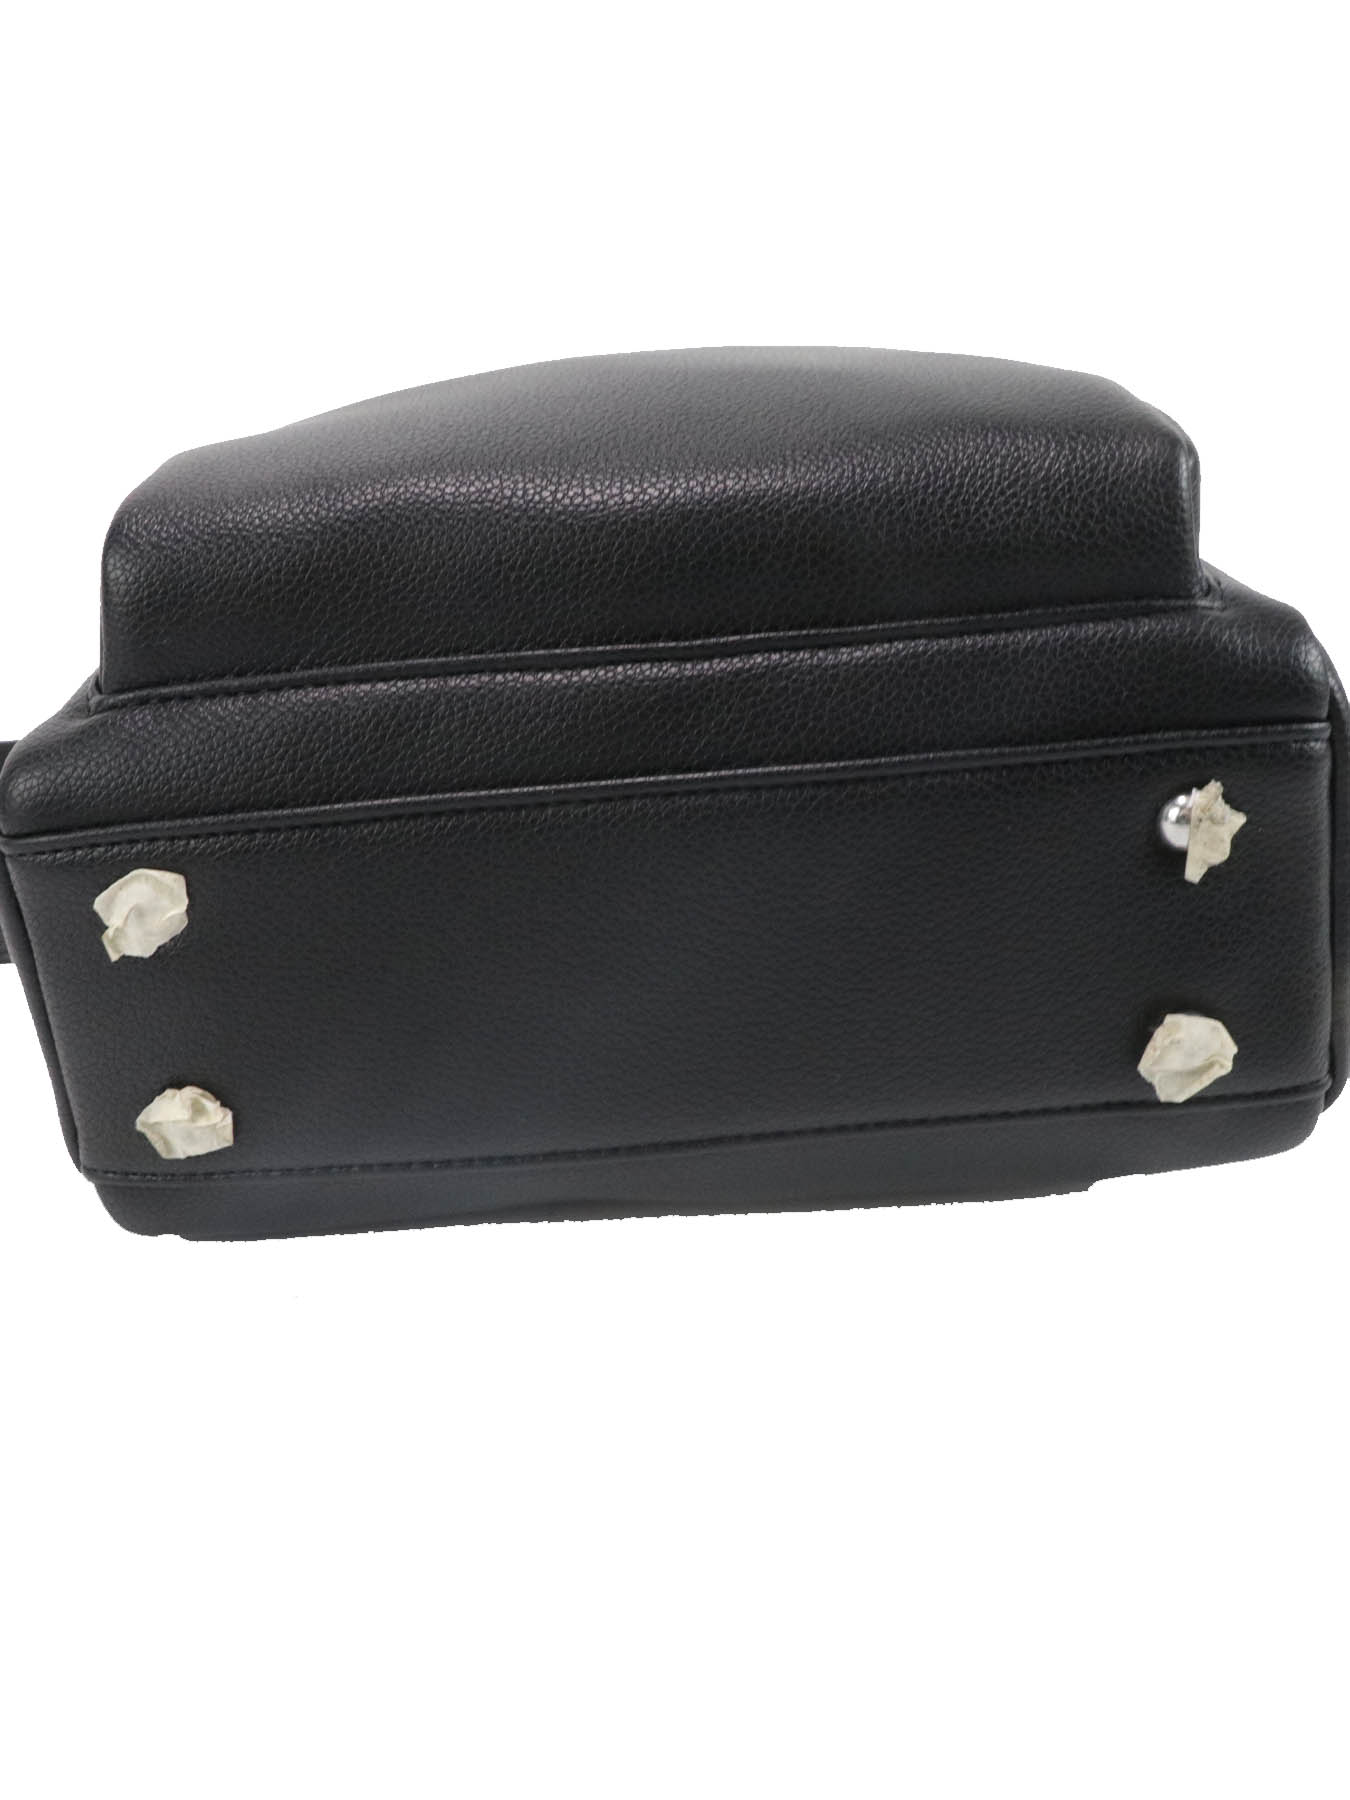 Fashionable large capacity luxury men's black crossbody bag